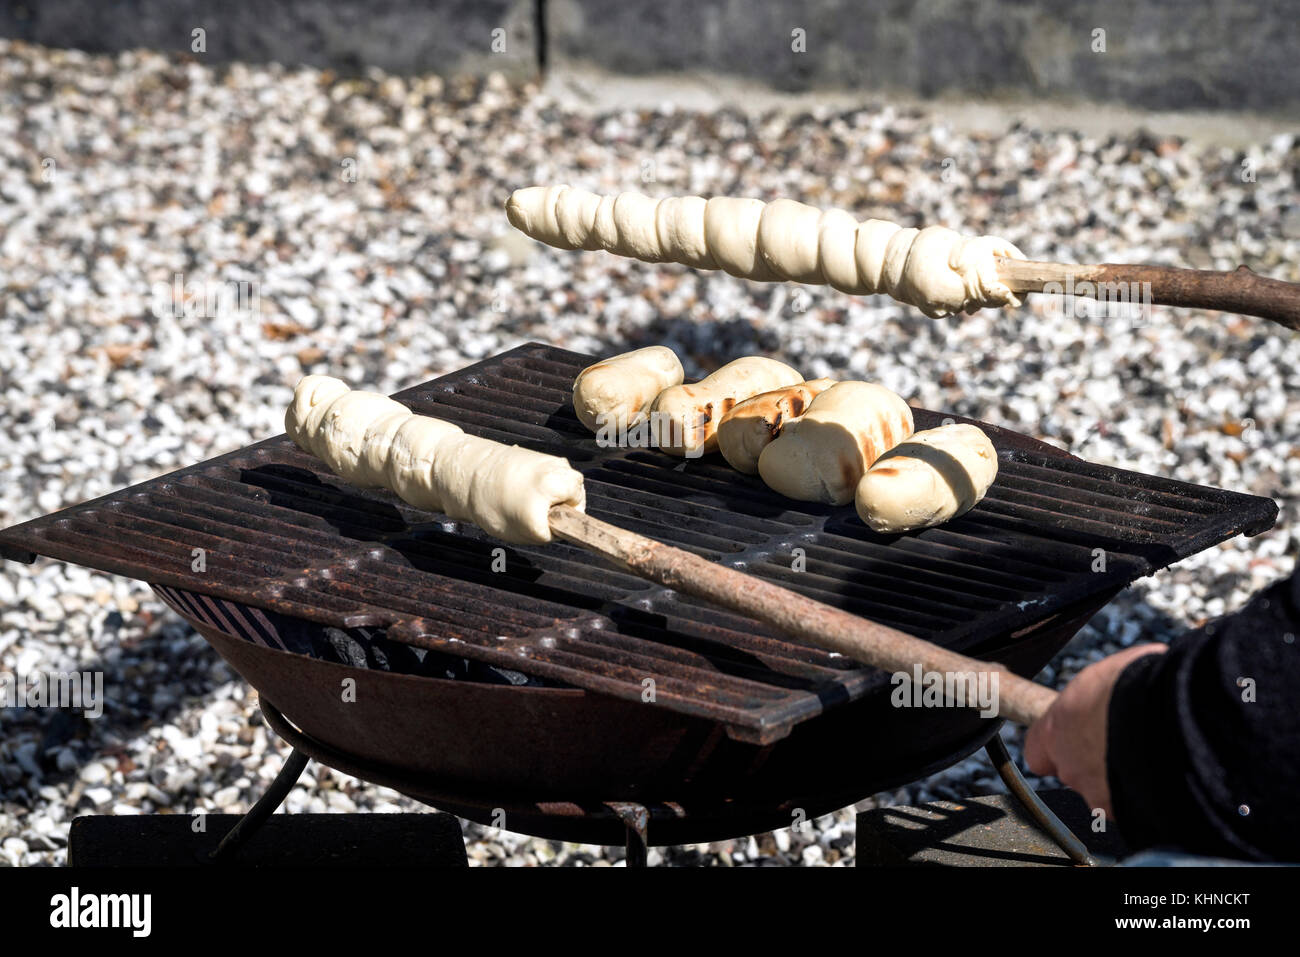 Brot auf einen Grill im Freien mit rohen Teig auf einem Stick fertig gebacken werden Stockfoto